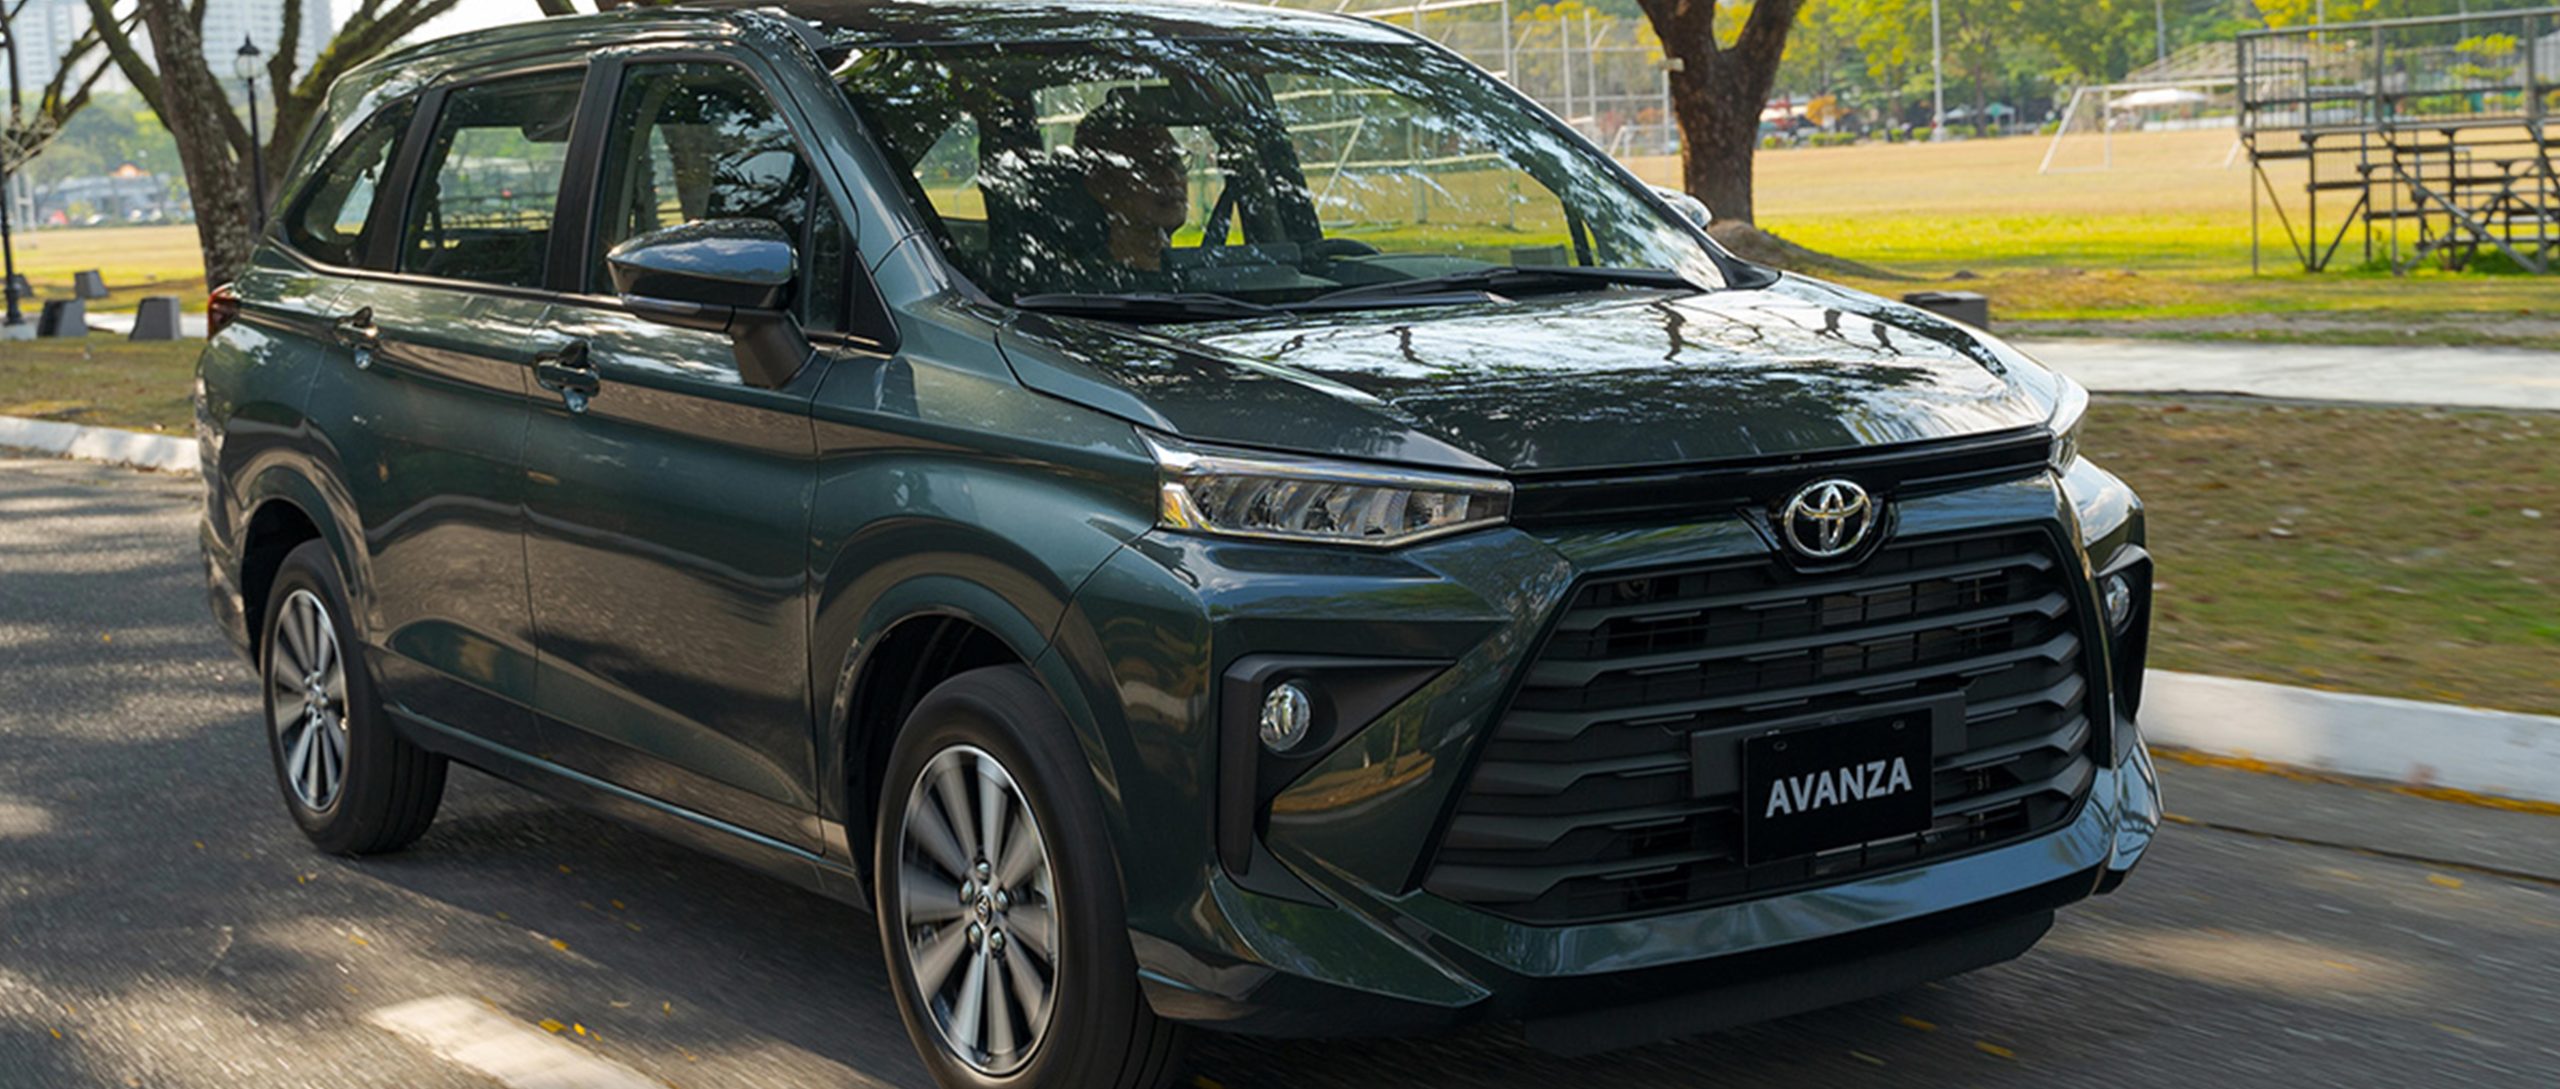 Toyota avanza specs & features in pakistan